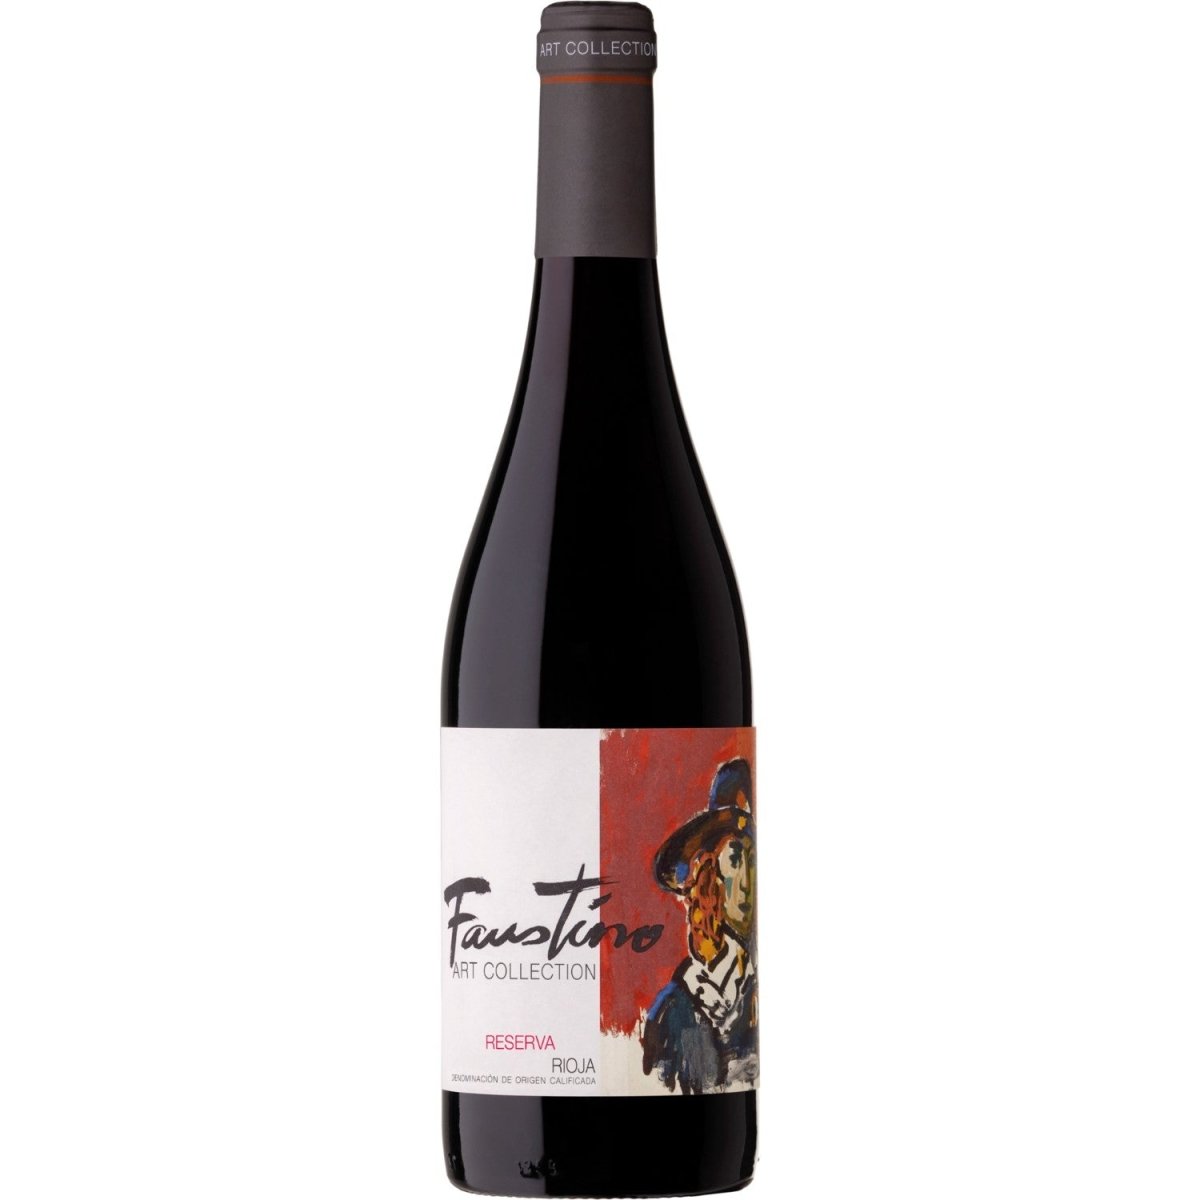 Faustino Art Collection Reserva Rotwein Wein trocken Spanien ( 3 x 0,75l ) - Versanel -